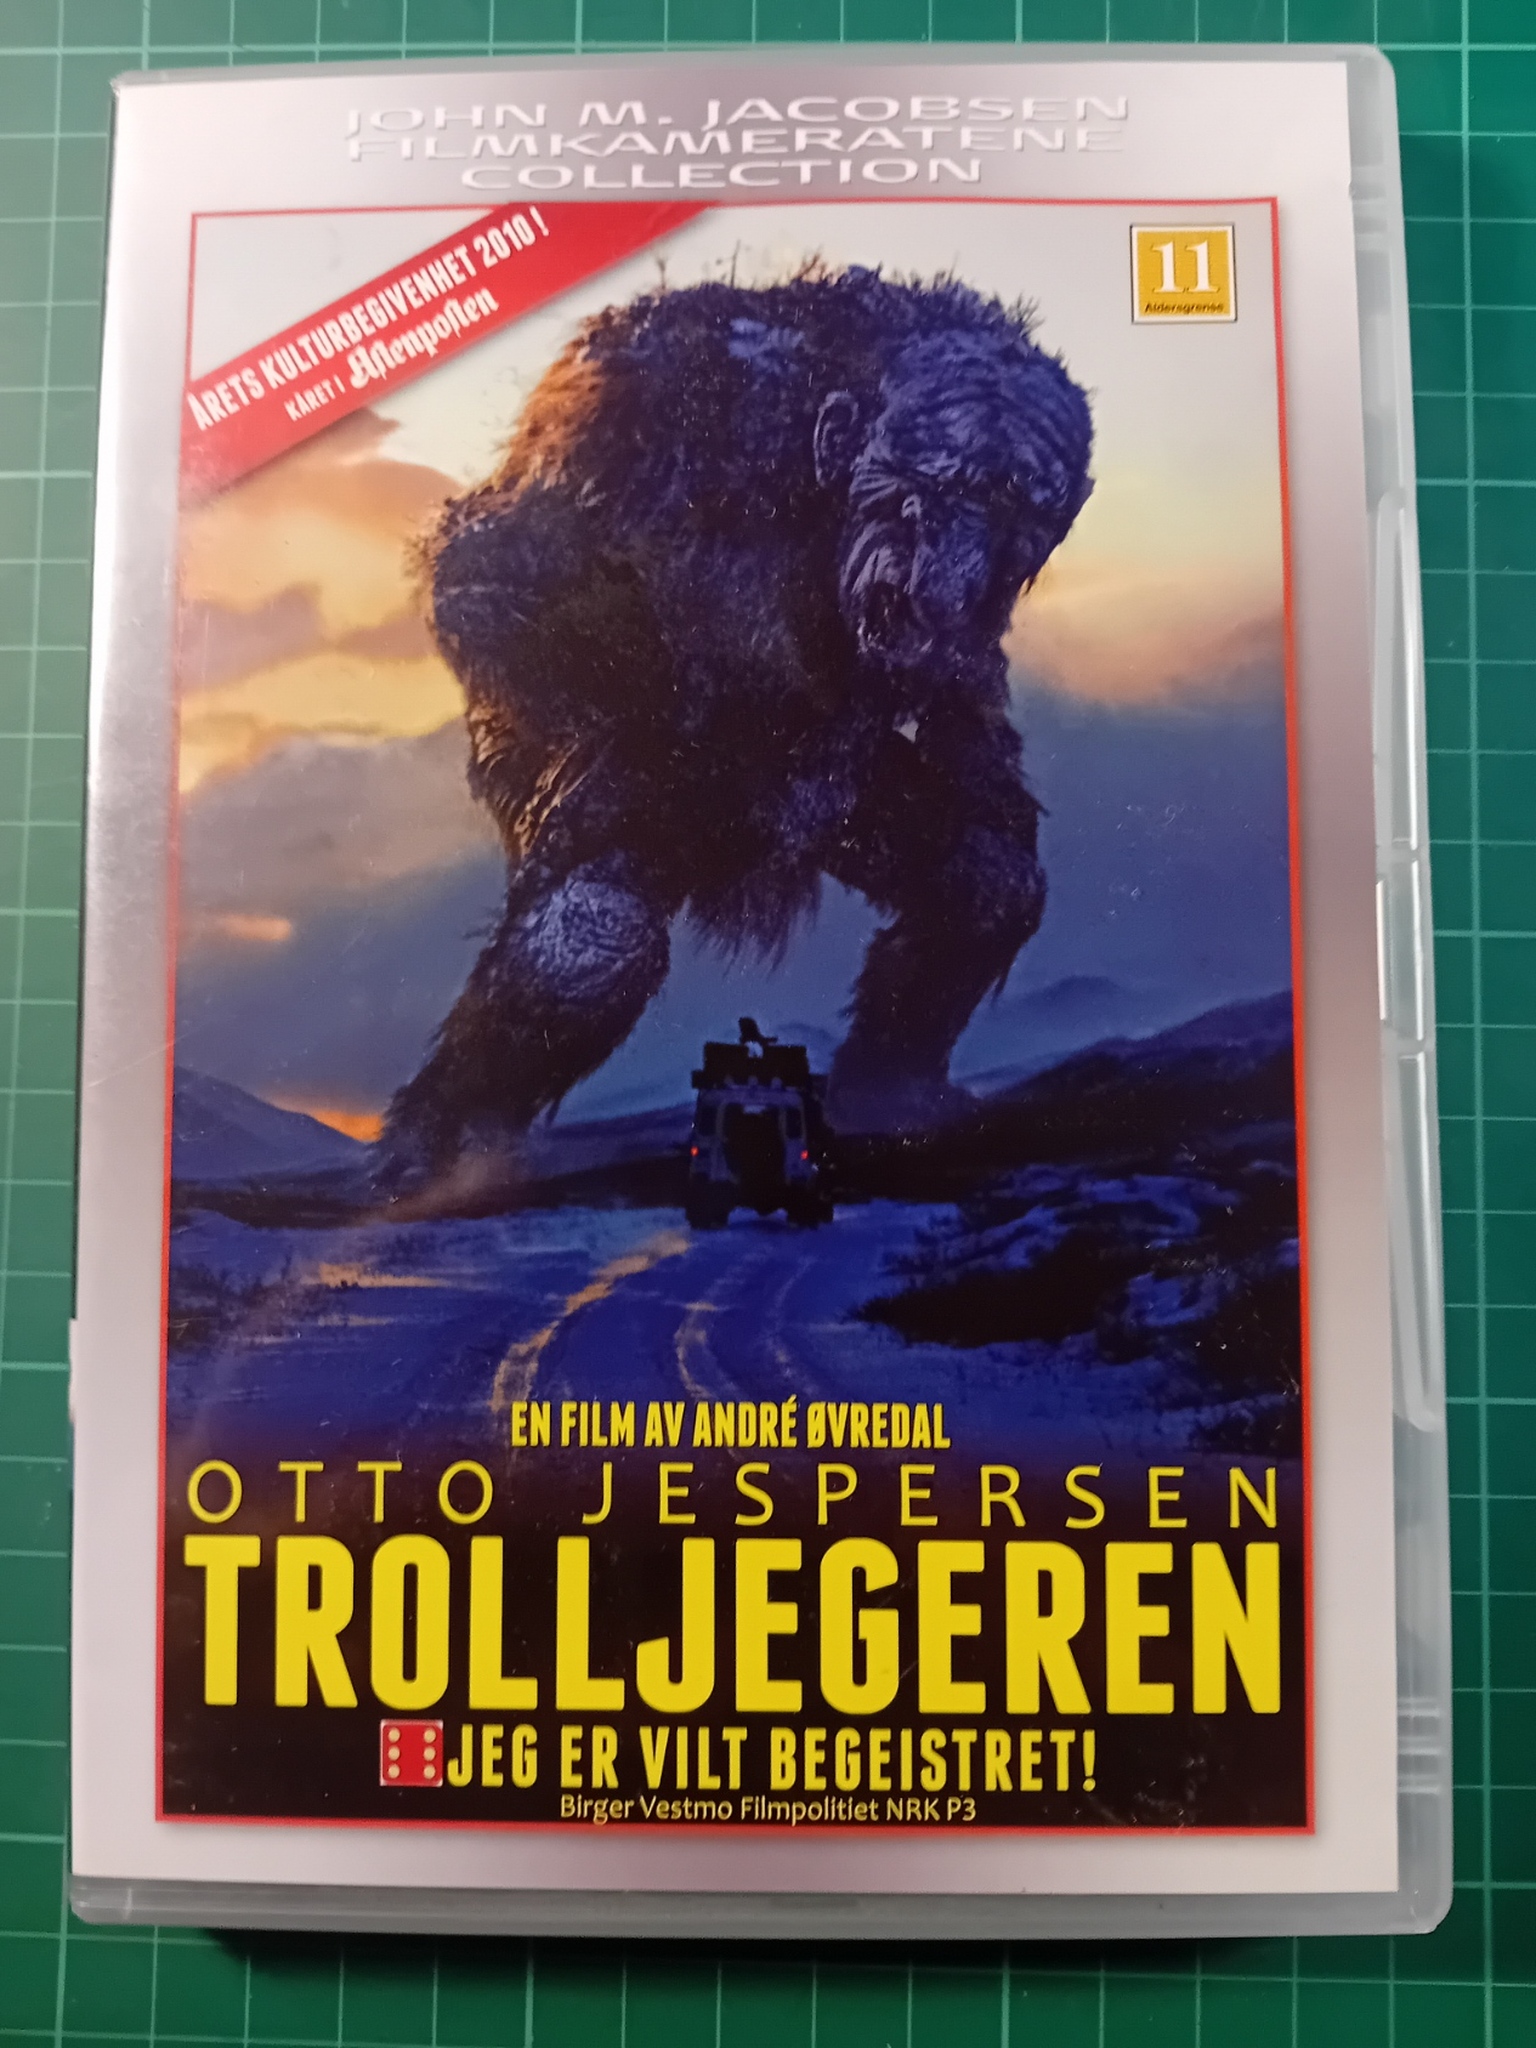 DVD : Trolljegeren